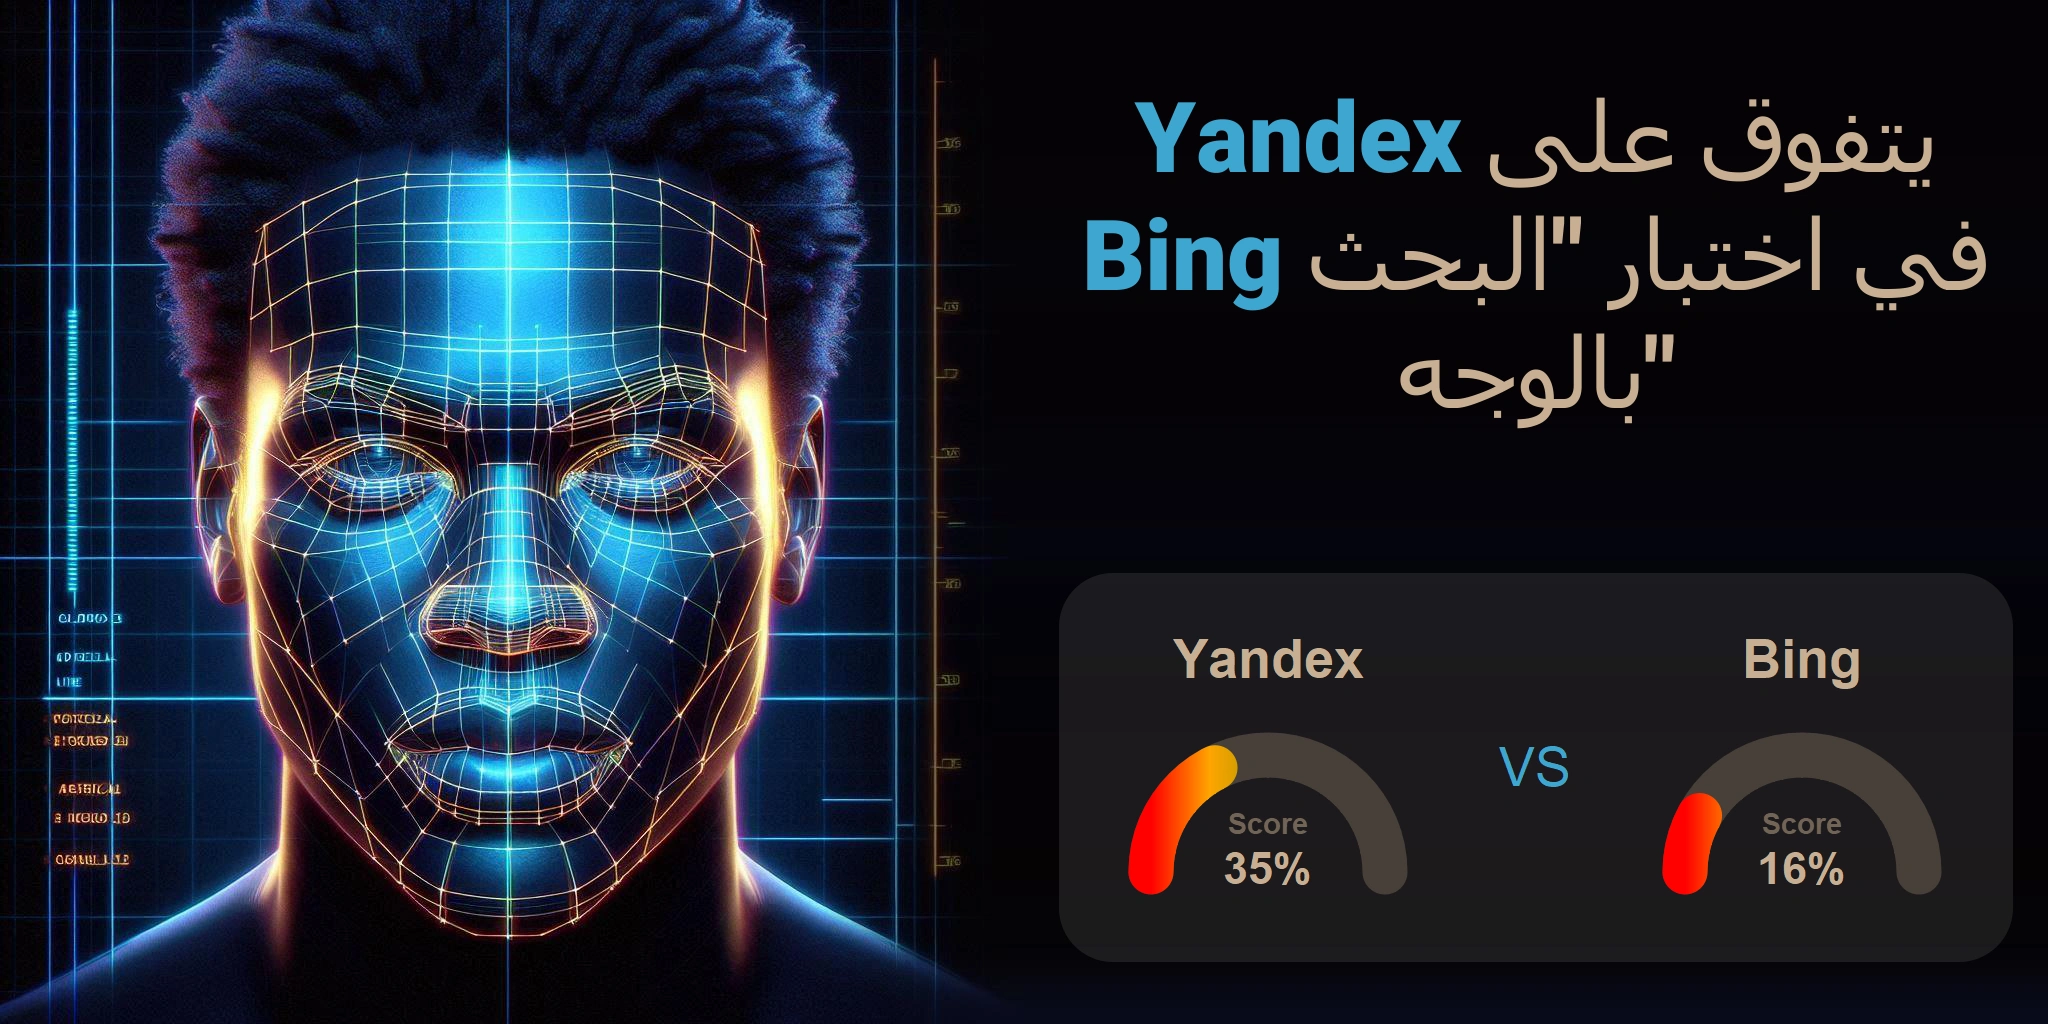 ما هو الأفضل للبحث بالوجه: <br>Bing أو Yandex؟